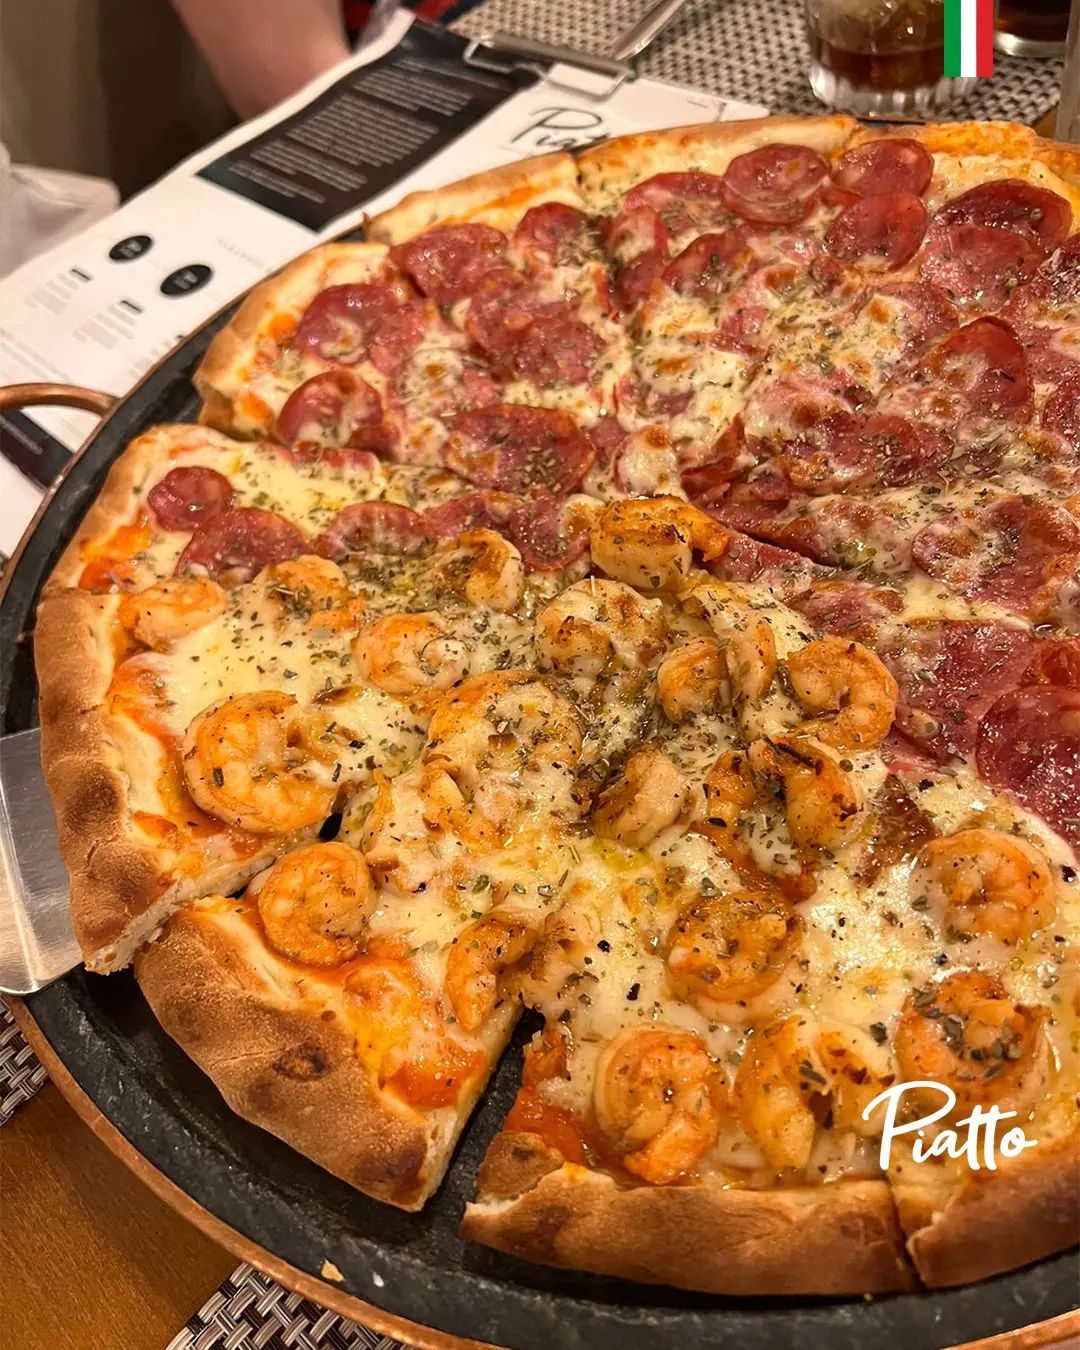 Piatto Pizza slide 4